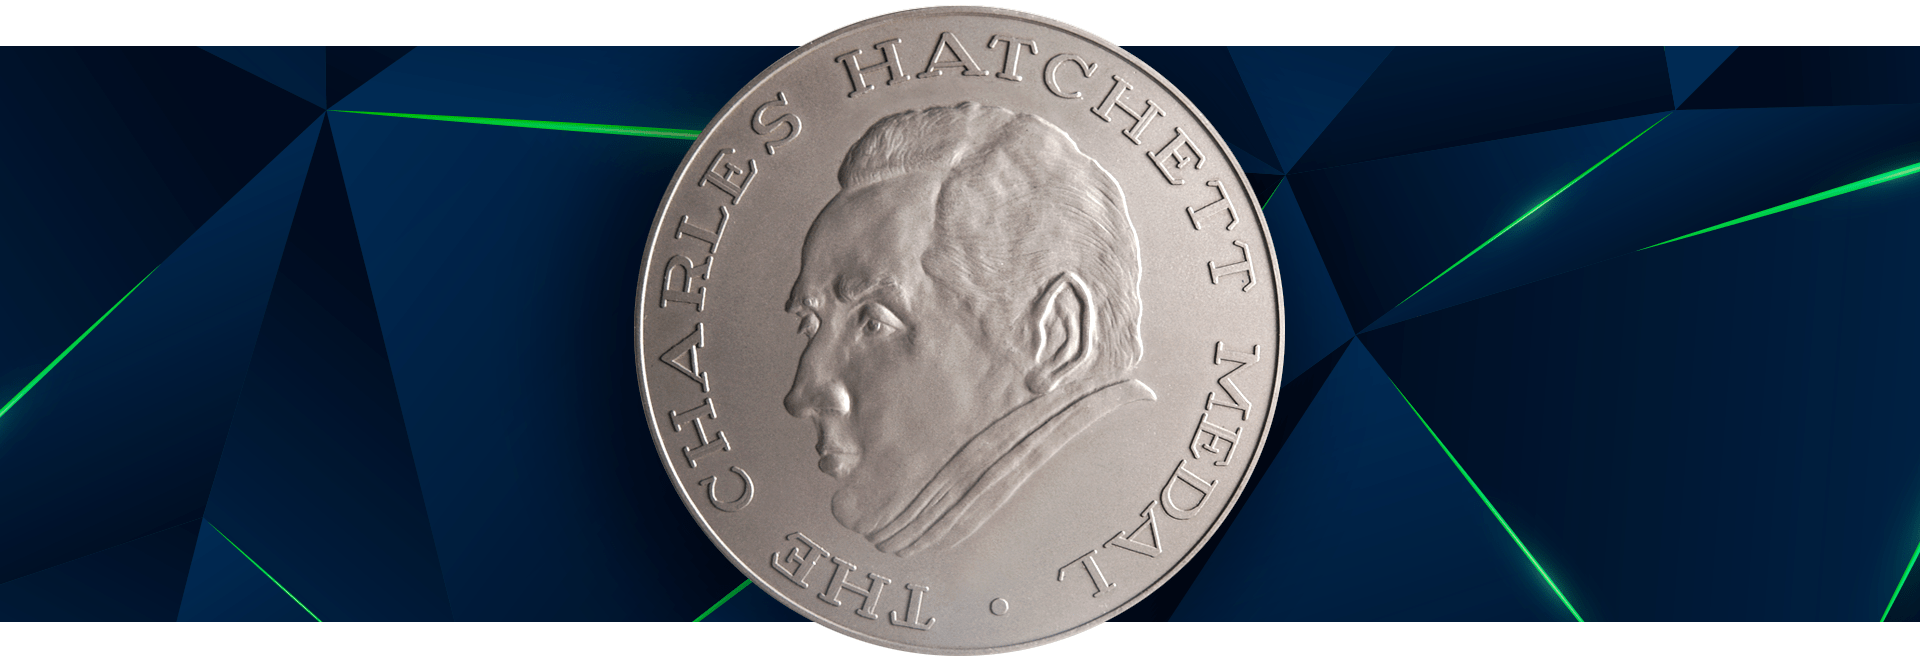 Image of the Charles Hatchett Award medal